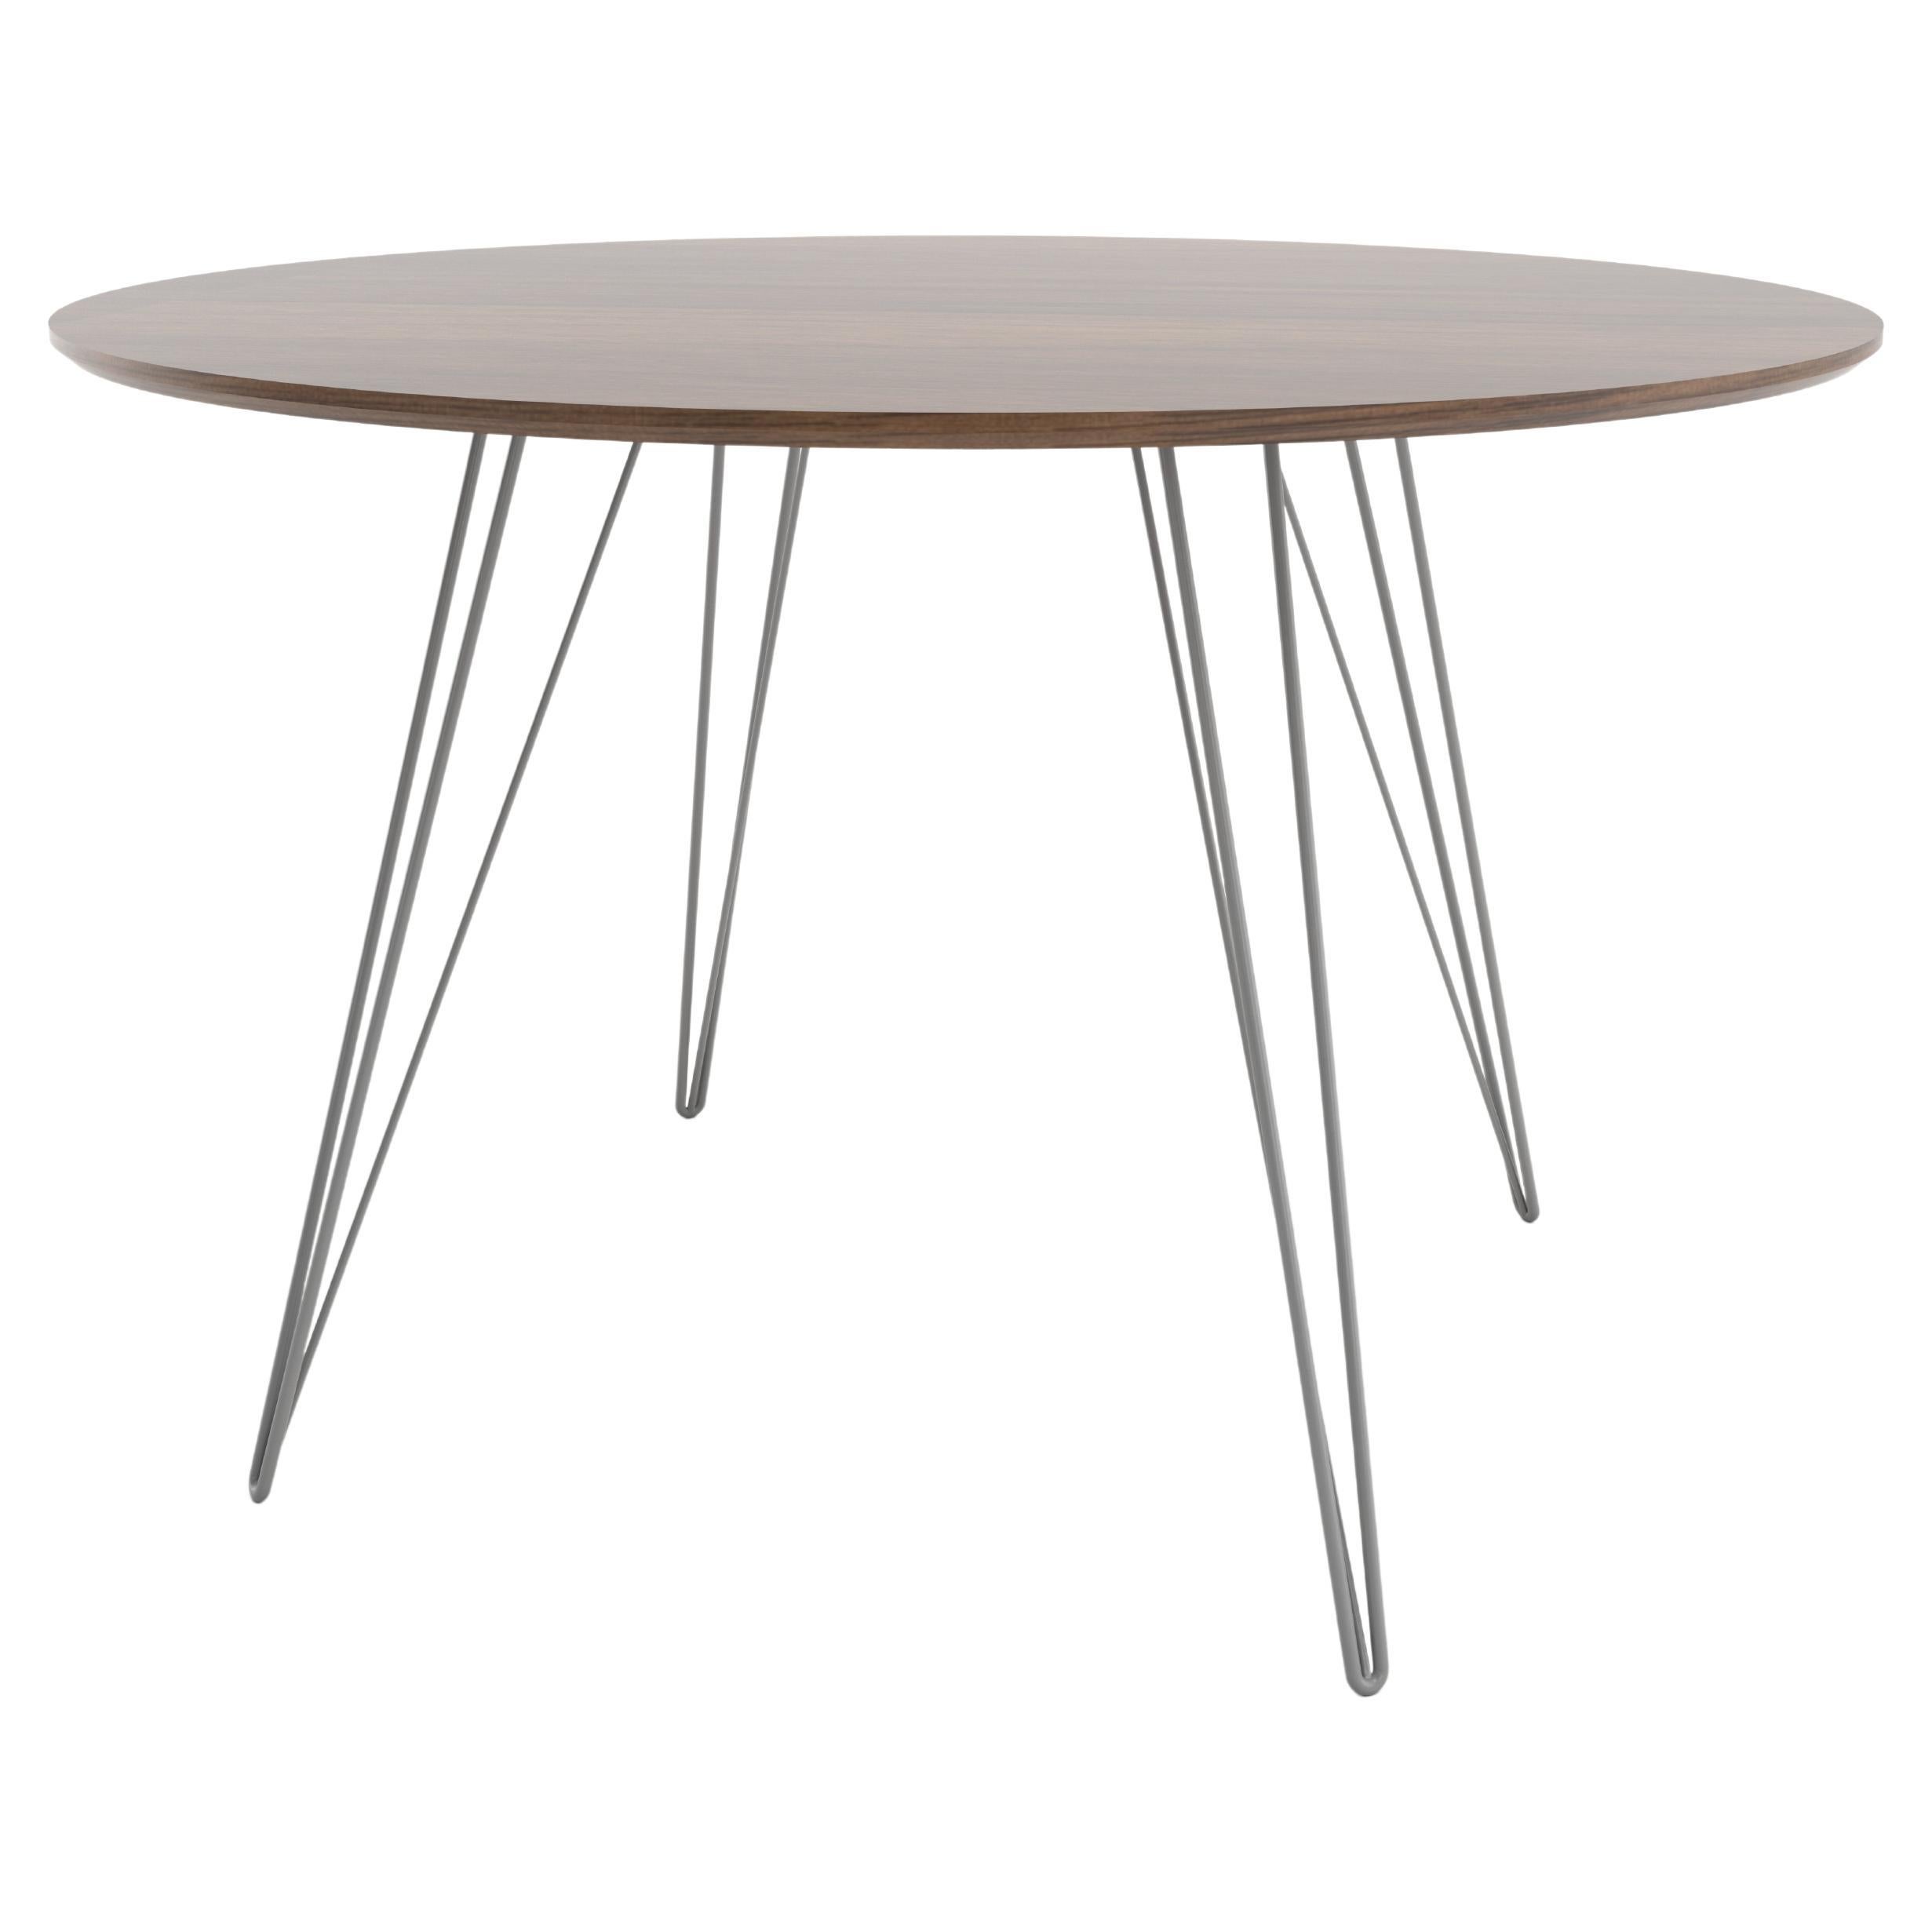 Williams-Esstisch aus Nussbaumholz mit grauen Haarnadelbeinen und ovaler Platte